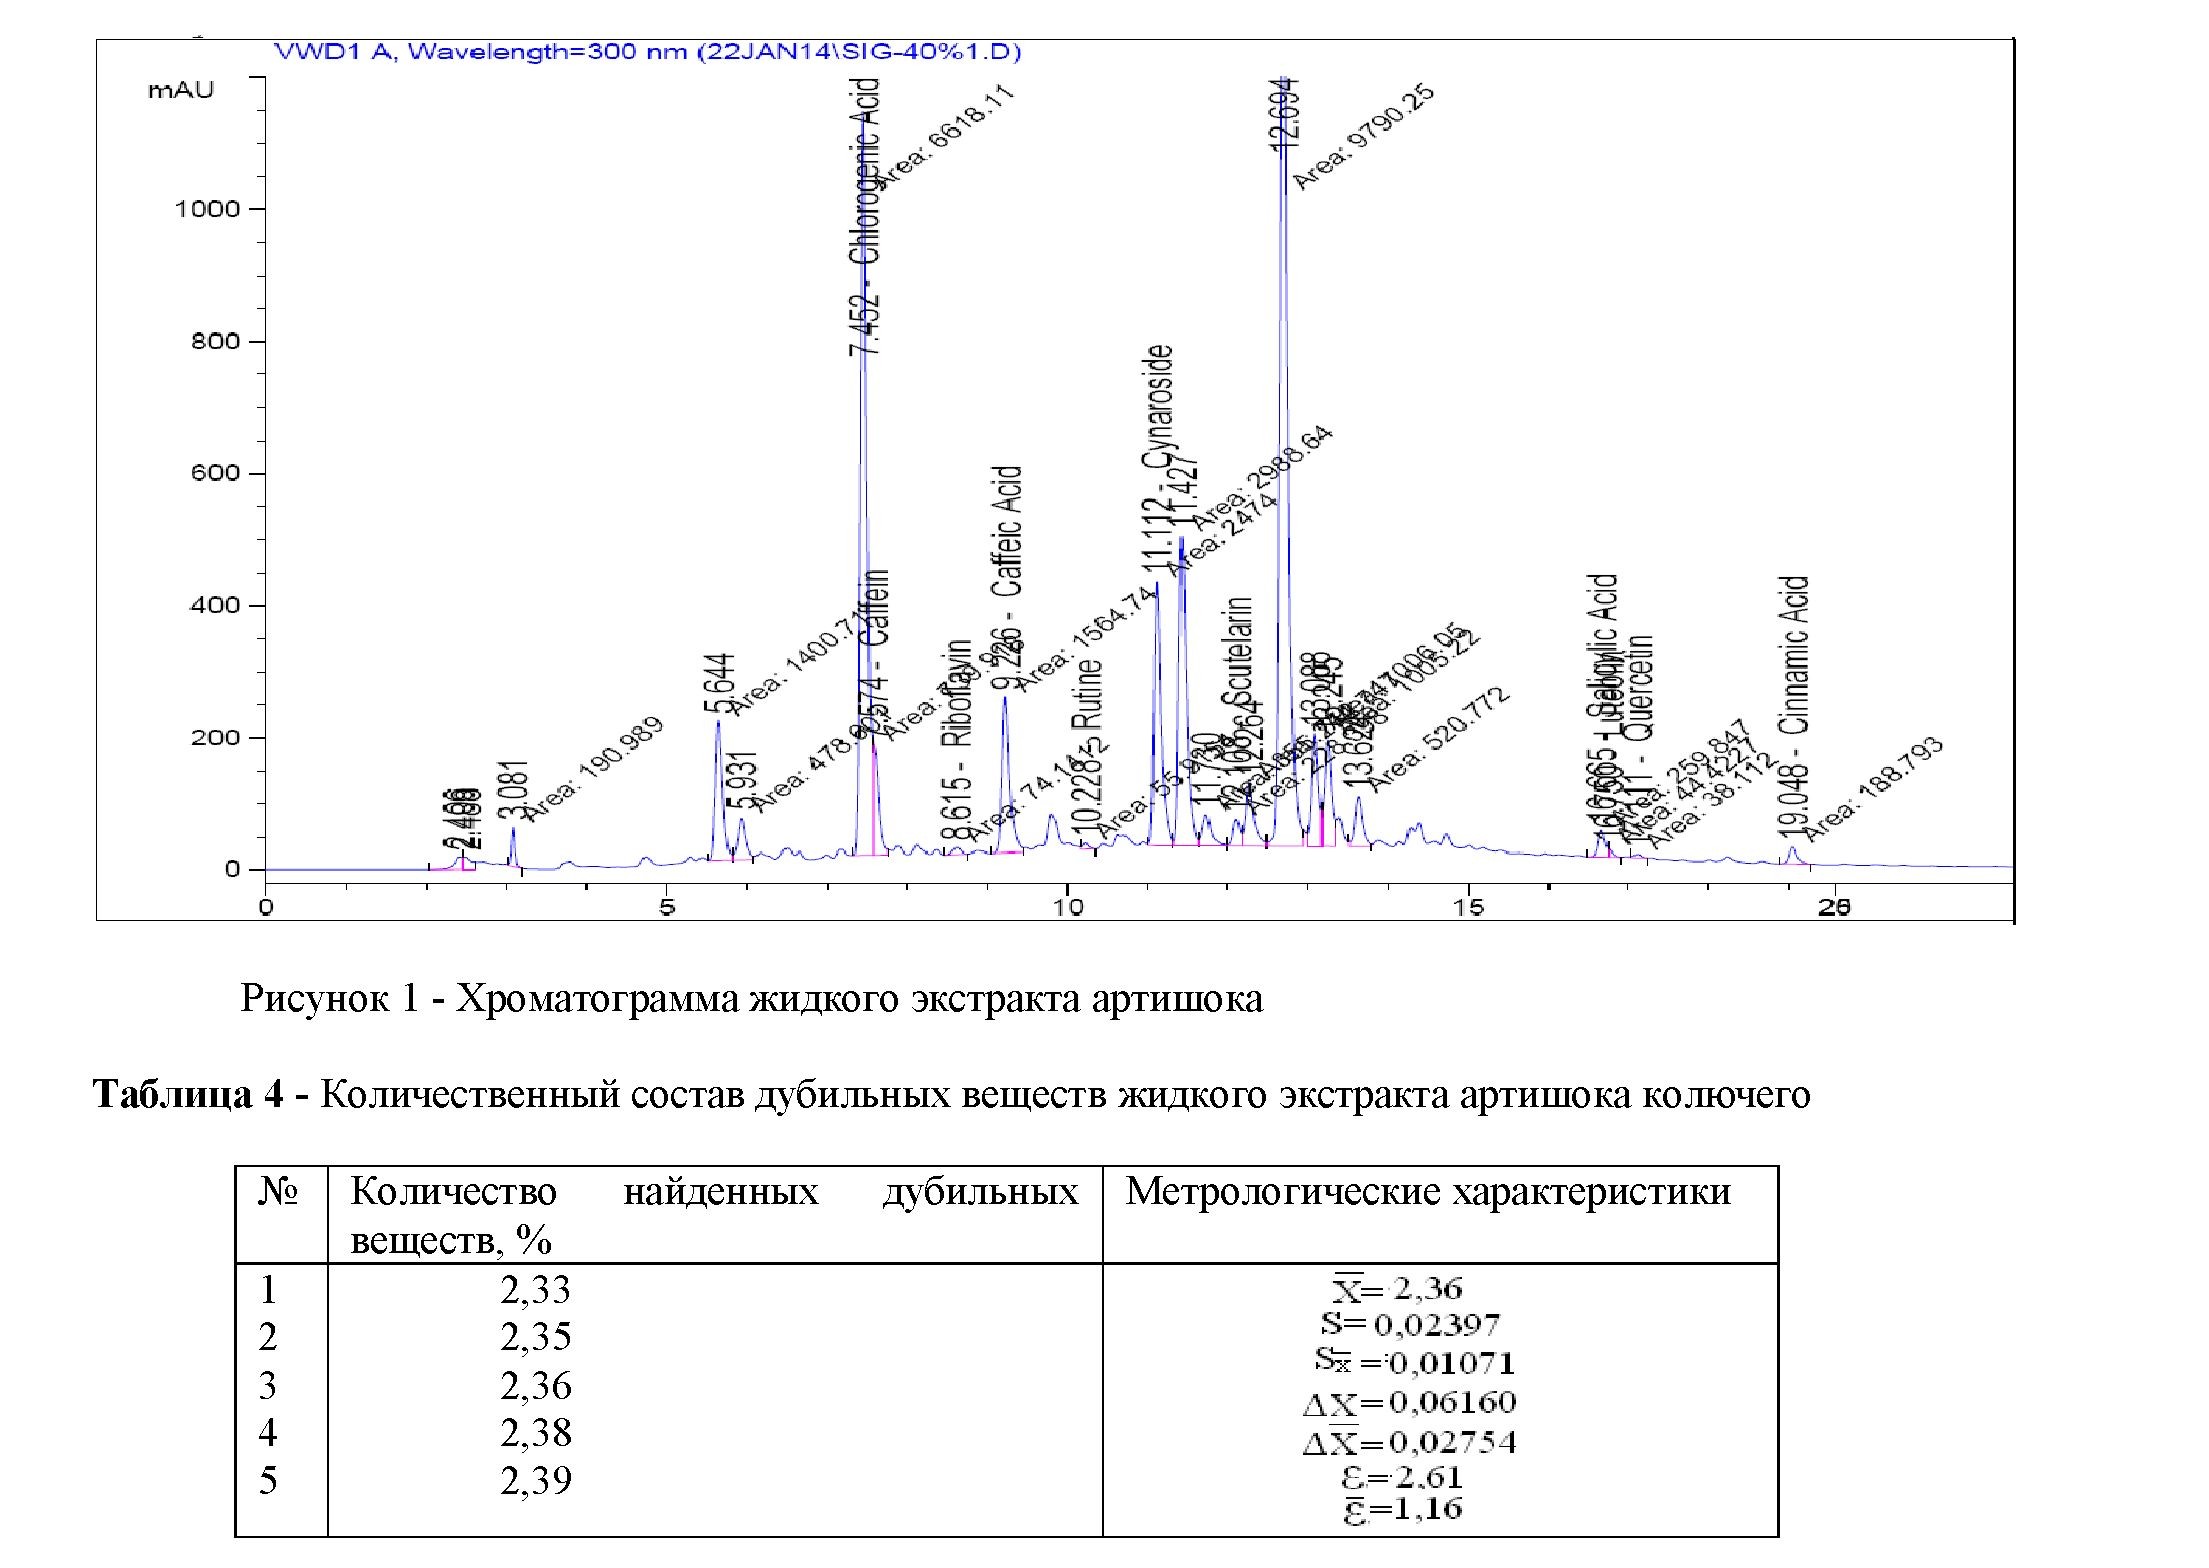 Определение числовых показателей и изучение некоторых биологически активных веществ жидкого экстракта cynara scolymus l.